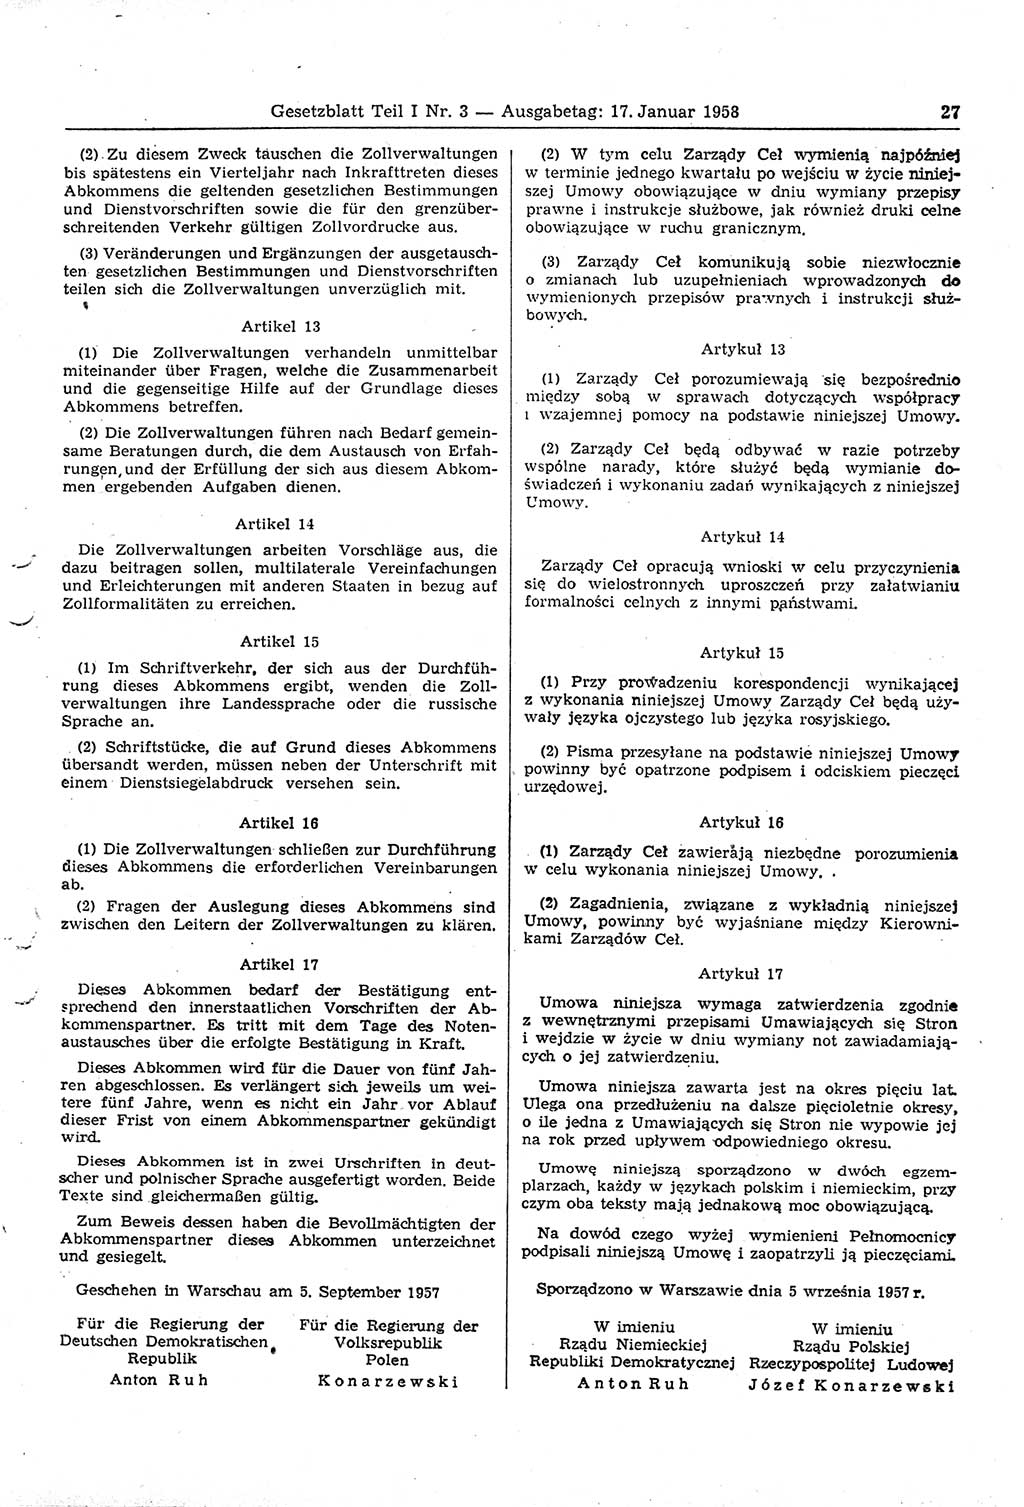 Gesetzblatt (GBl.) der Deutschen Demokratischen Republik (DDR) Teil Ⅰ 1958, Seite 27 (GBl. DDR Ⅰ 1958, S. 27)